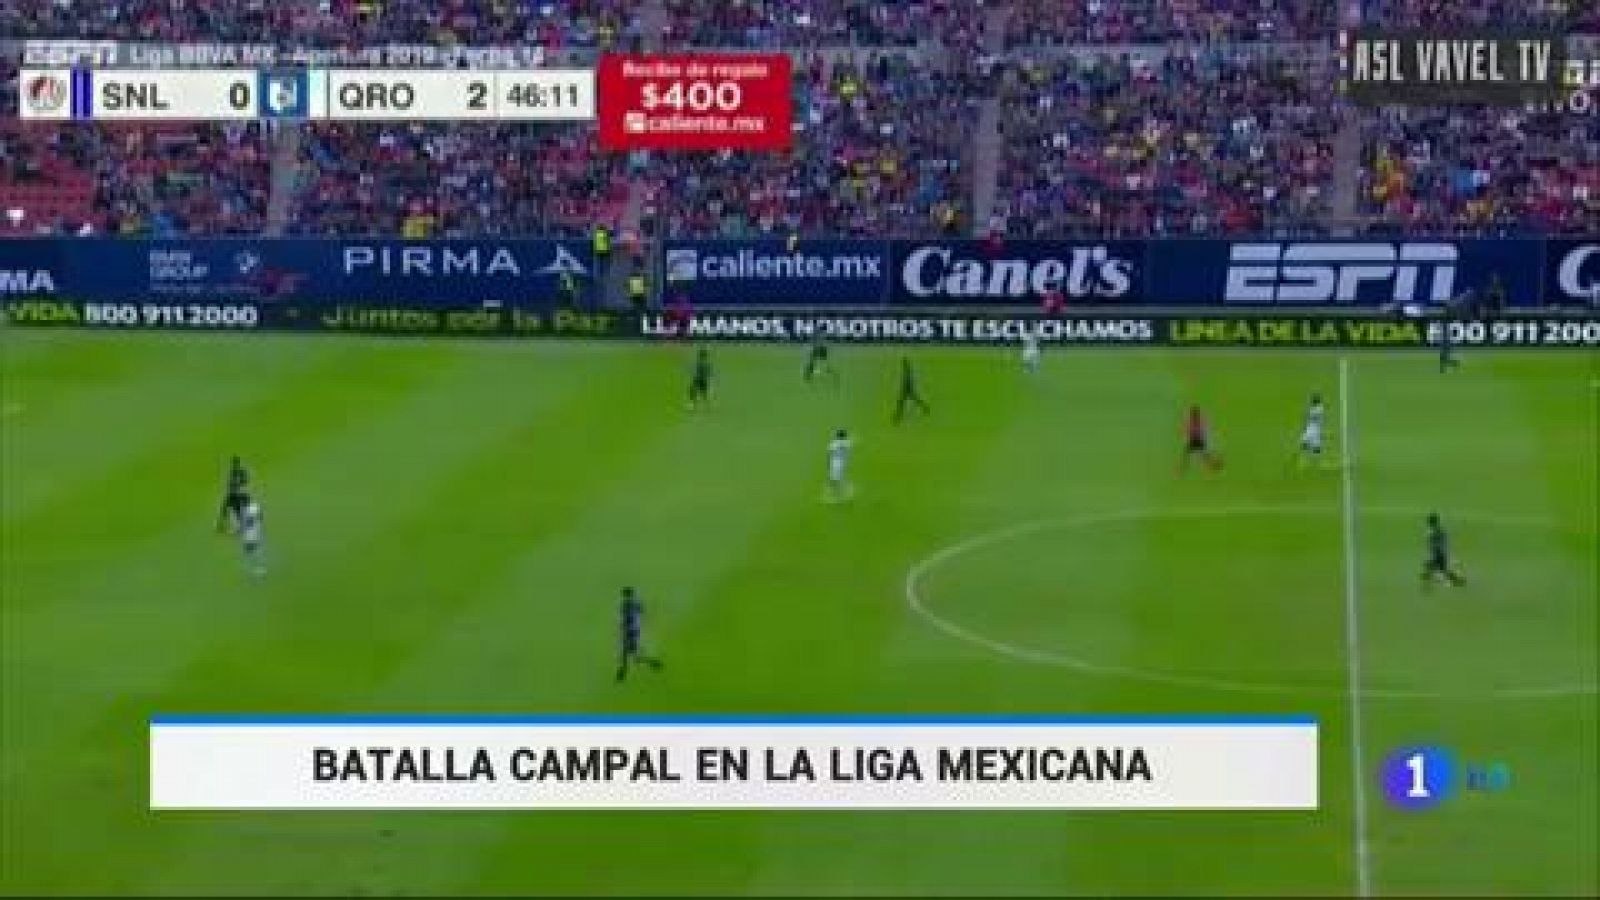 Fútbol | La violencia obliga a suspender el San Luis-Querétaro mexicano - rtve.es